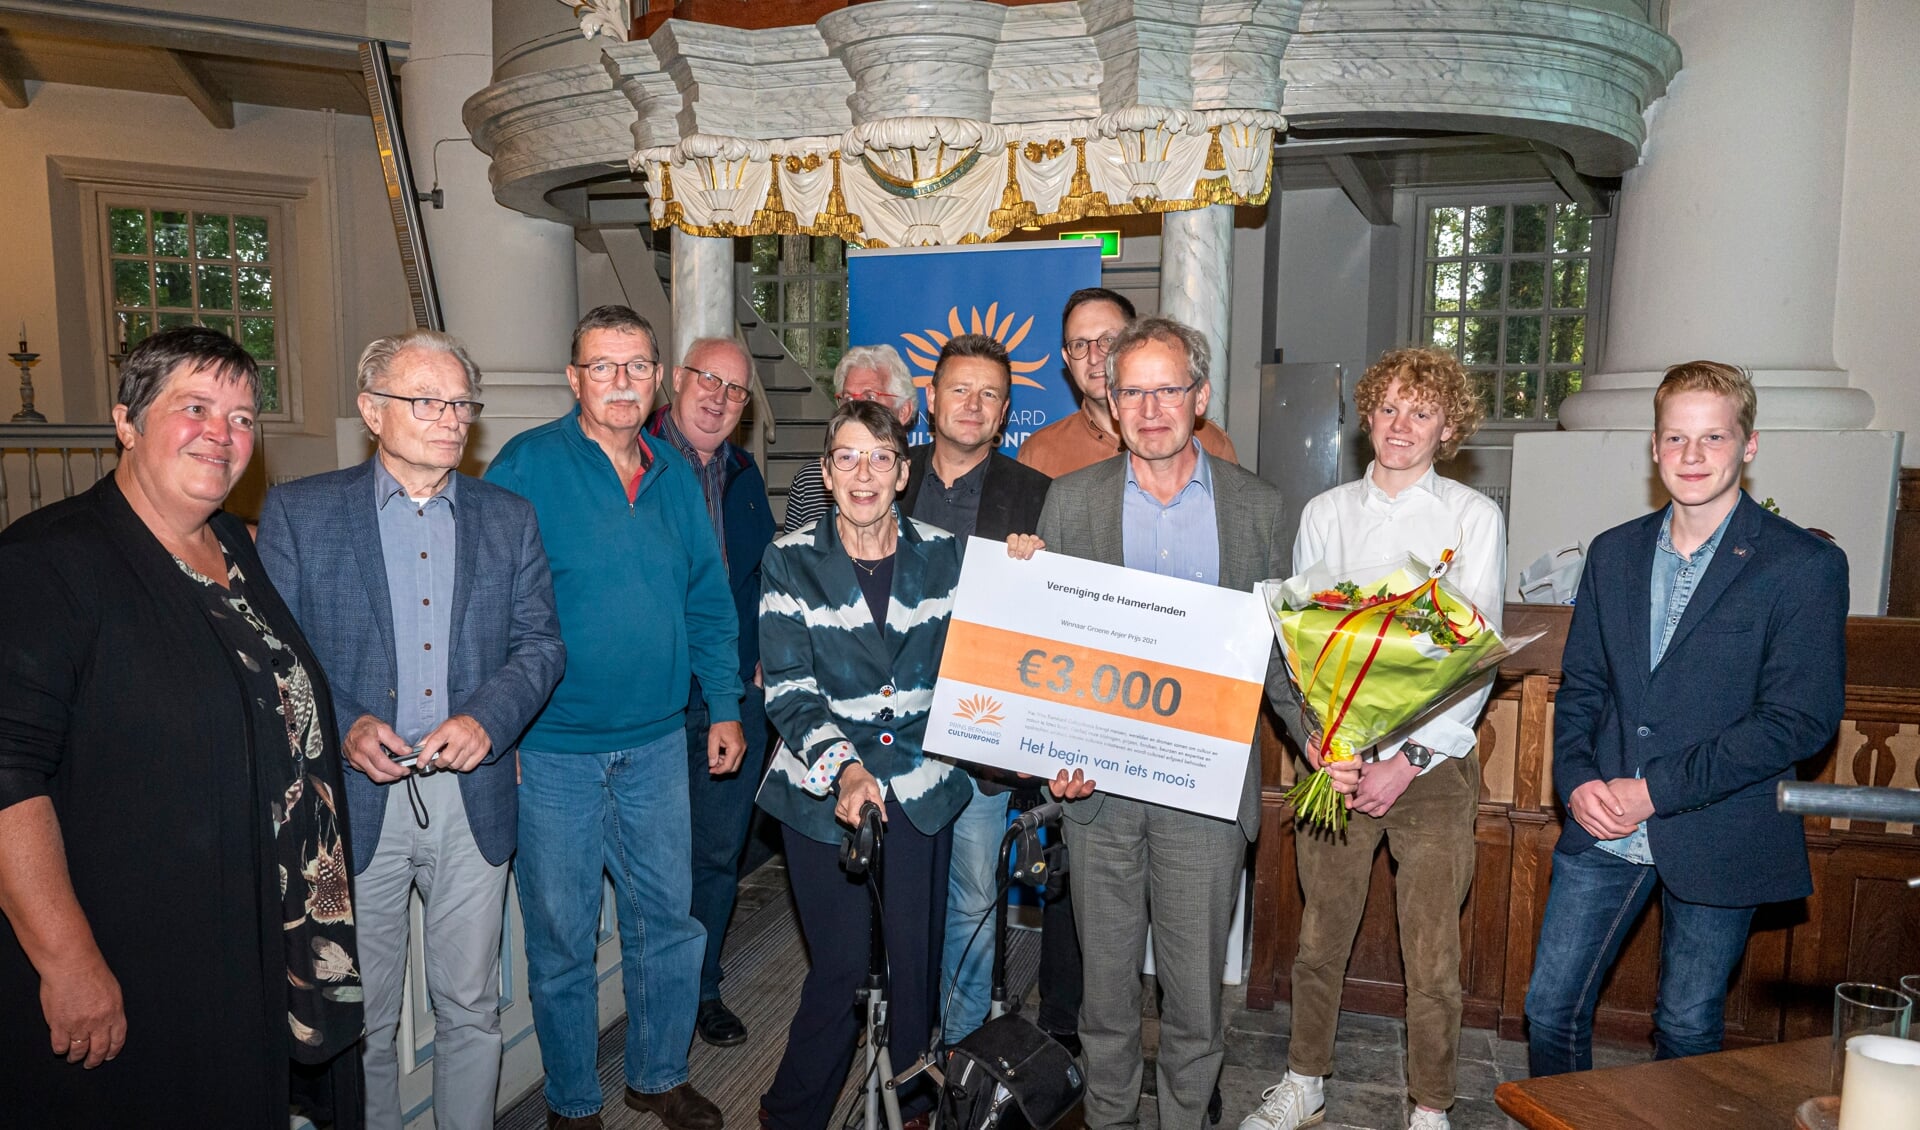 Vereniging de Hamerlanden krijgt in Veenhuizen de cheque van €3.000,- overhandigd door de Commissaris van de Koning in Drenthe, Jetta Klijnsma. (foto: Marcel Jurian de Jong)